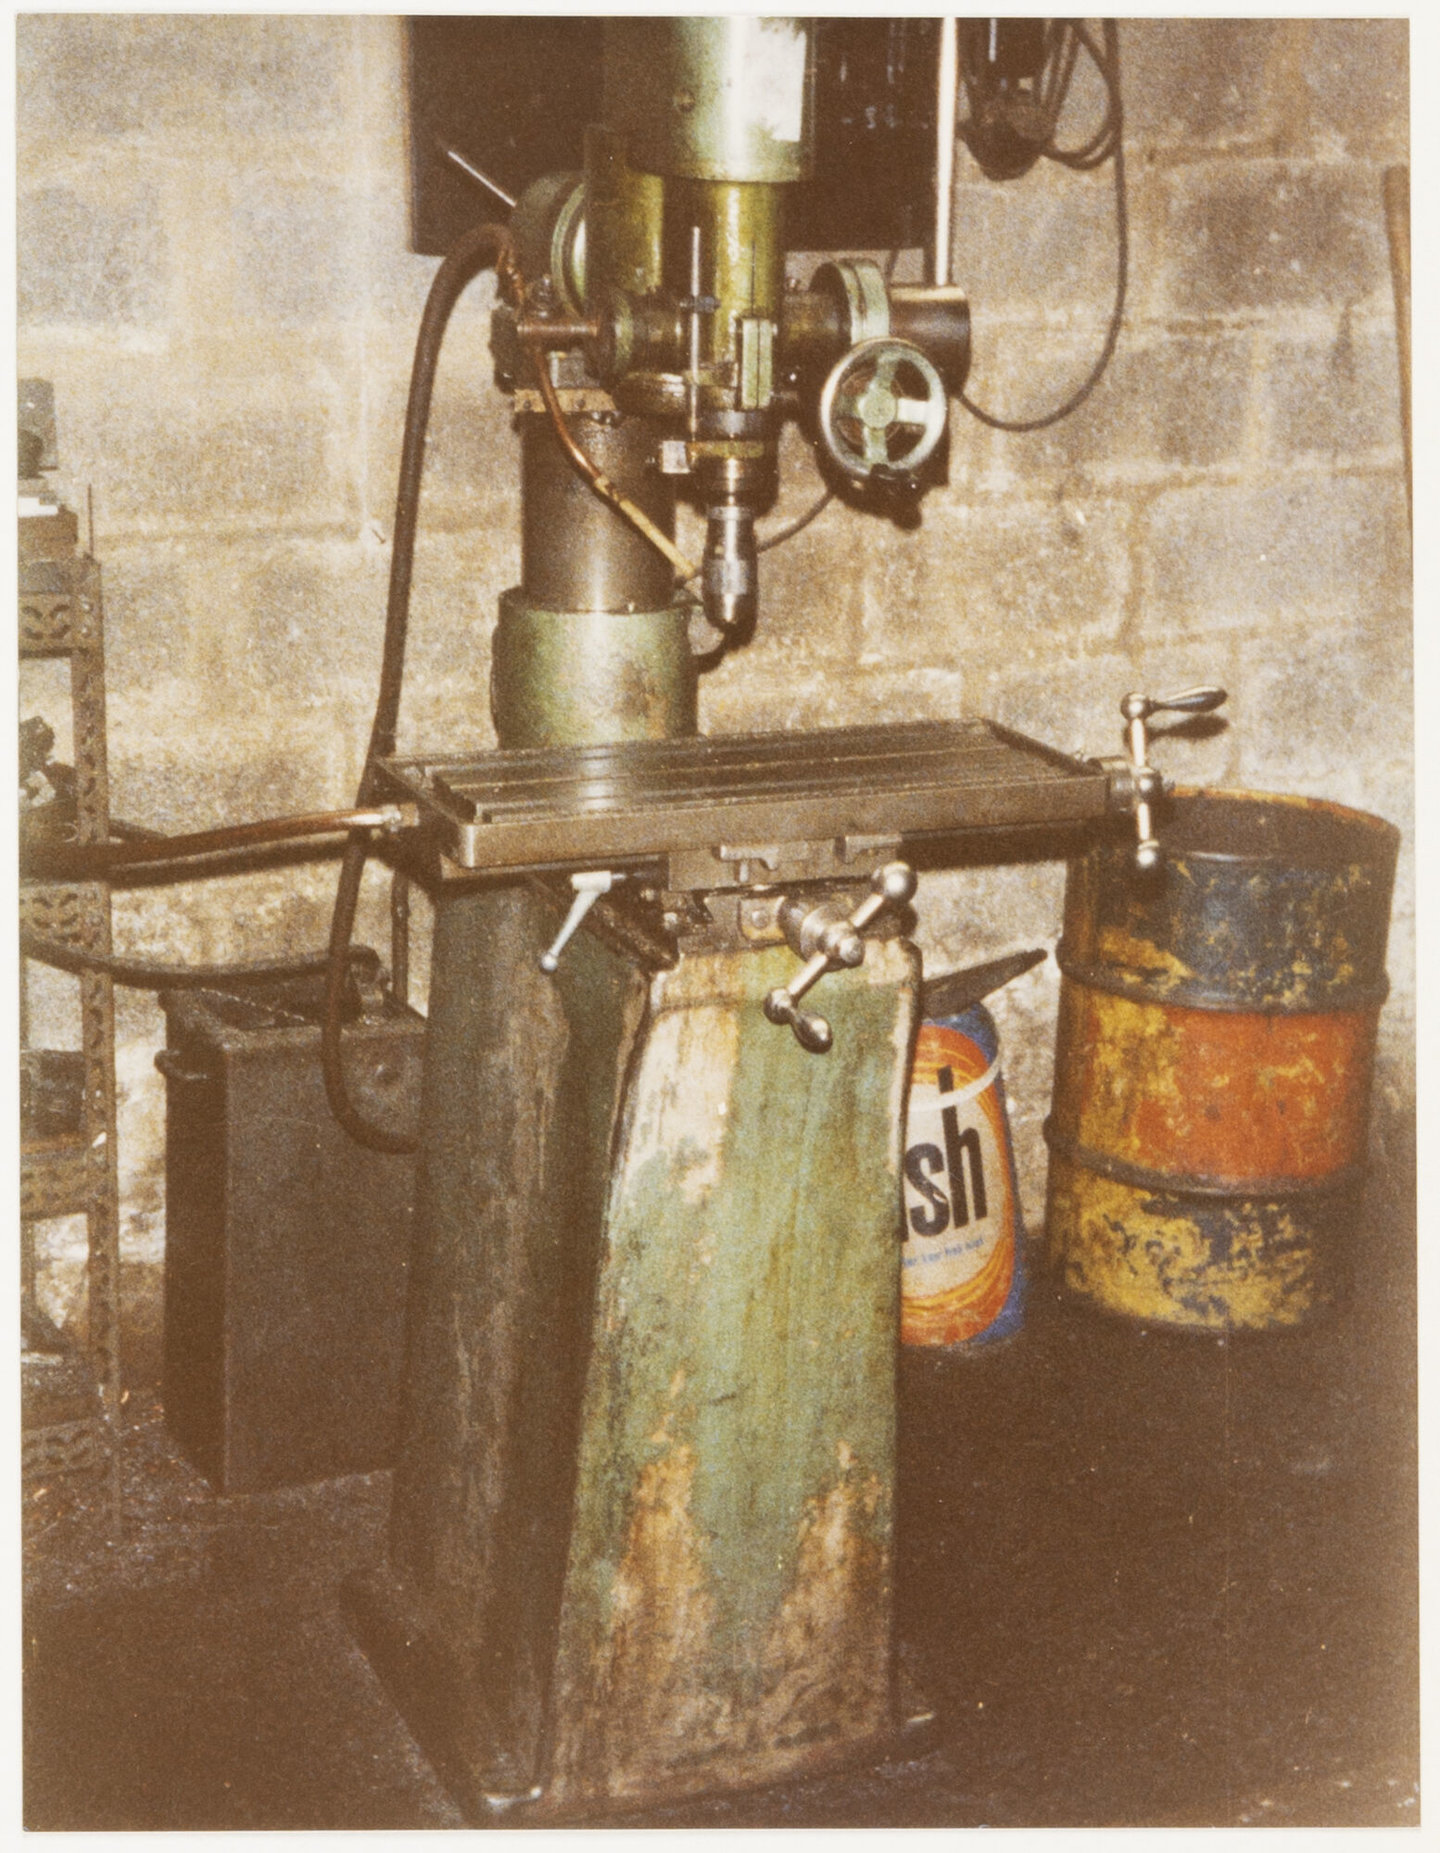 Kolomboormachine in machinewerkplaats van Lentz in Gent